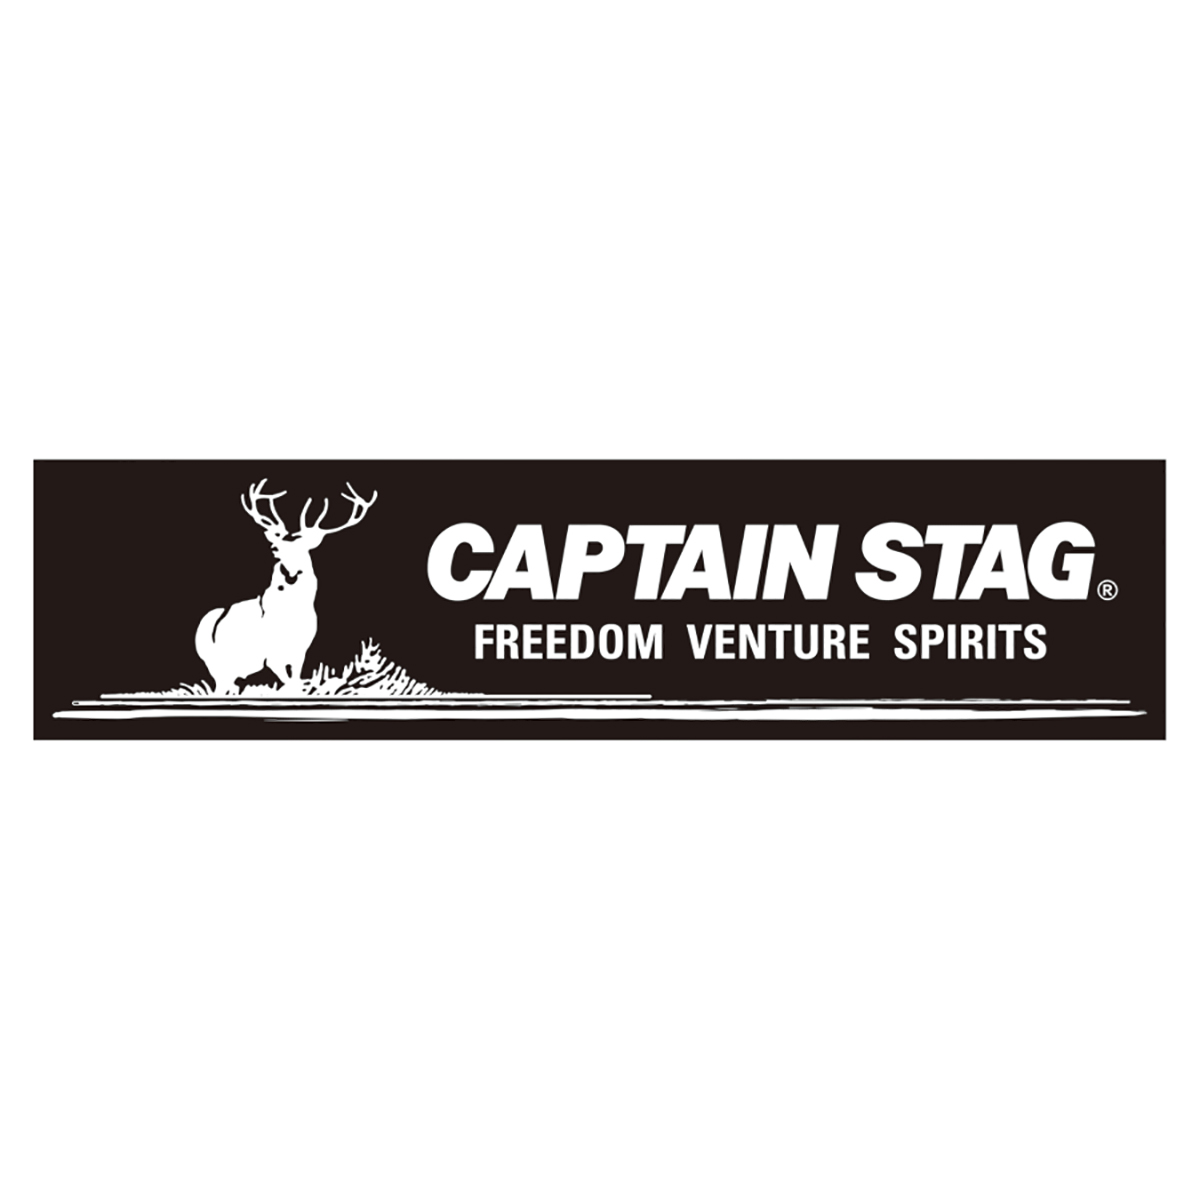 キャプテンスタッグステッカー ロゴマーク ブラック 228 60mm アウトドア キャンプ用品 キャプテンスタッグ